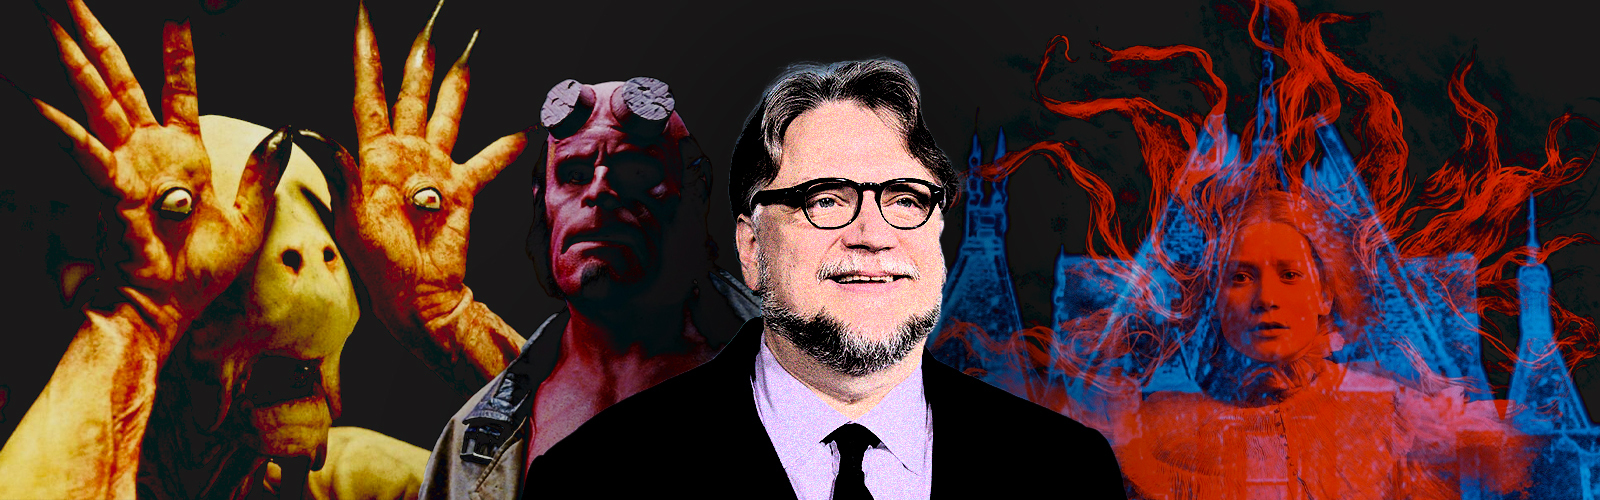 Guillermo del Toro movie guide